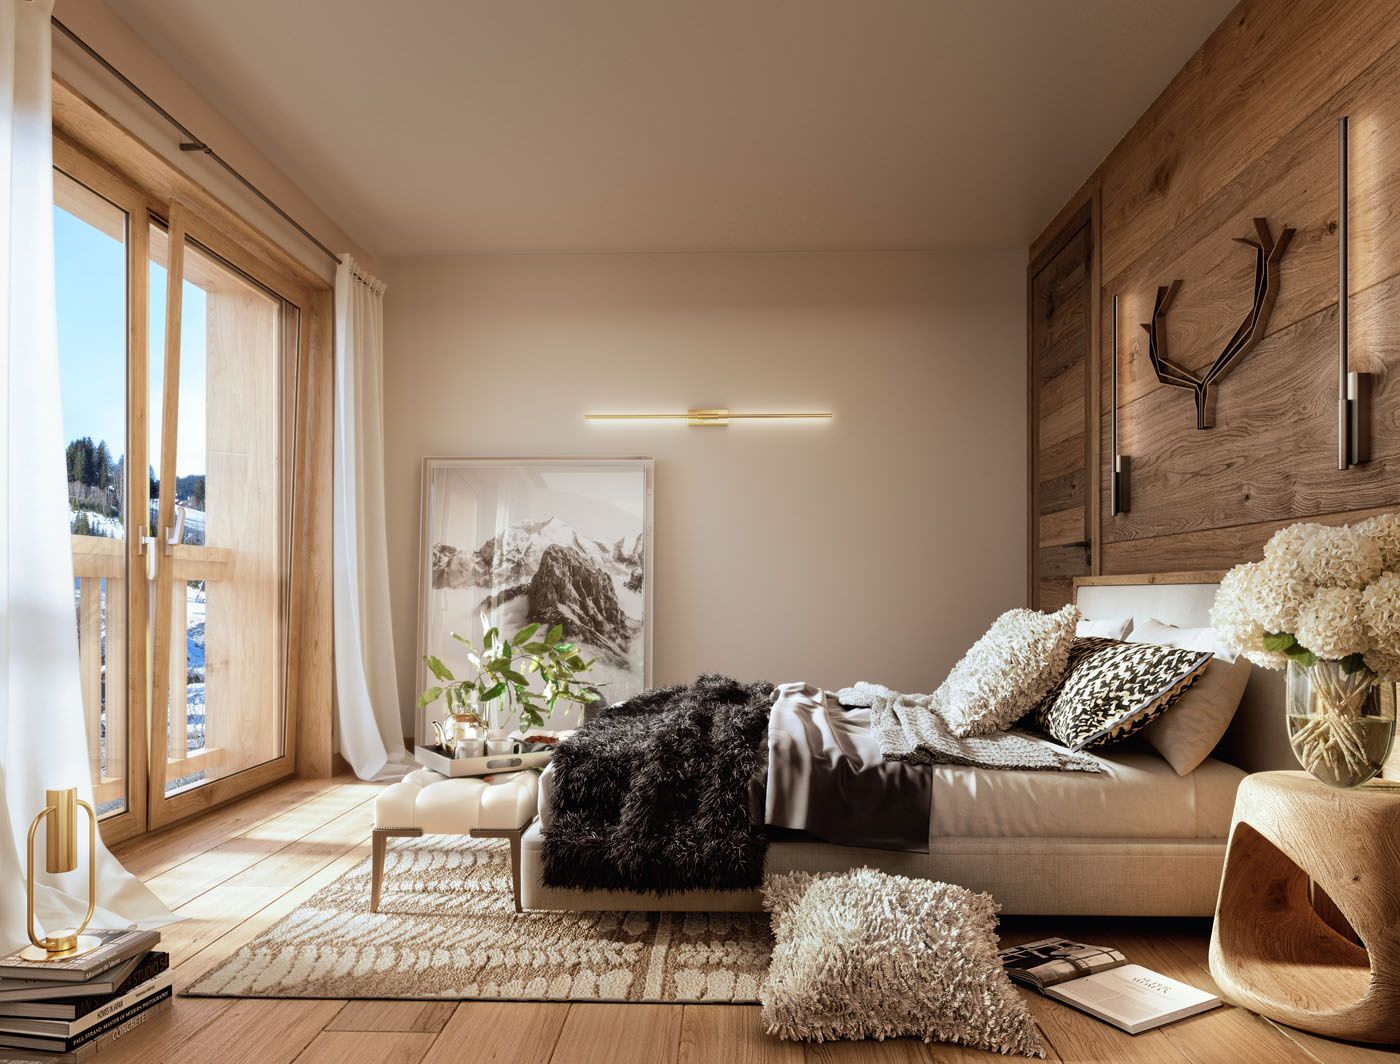 Appartement 3 chambres à vendre à Portes du Soleil, Alpes françaises